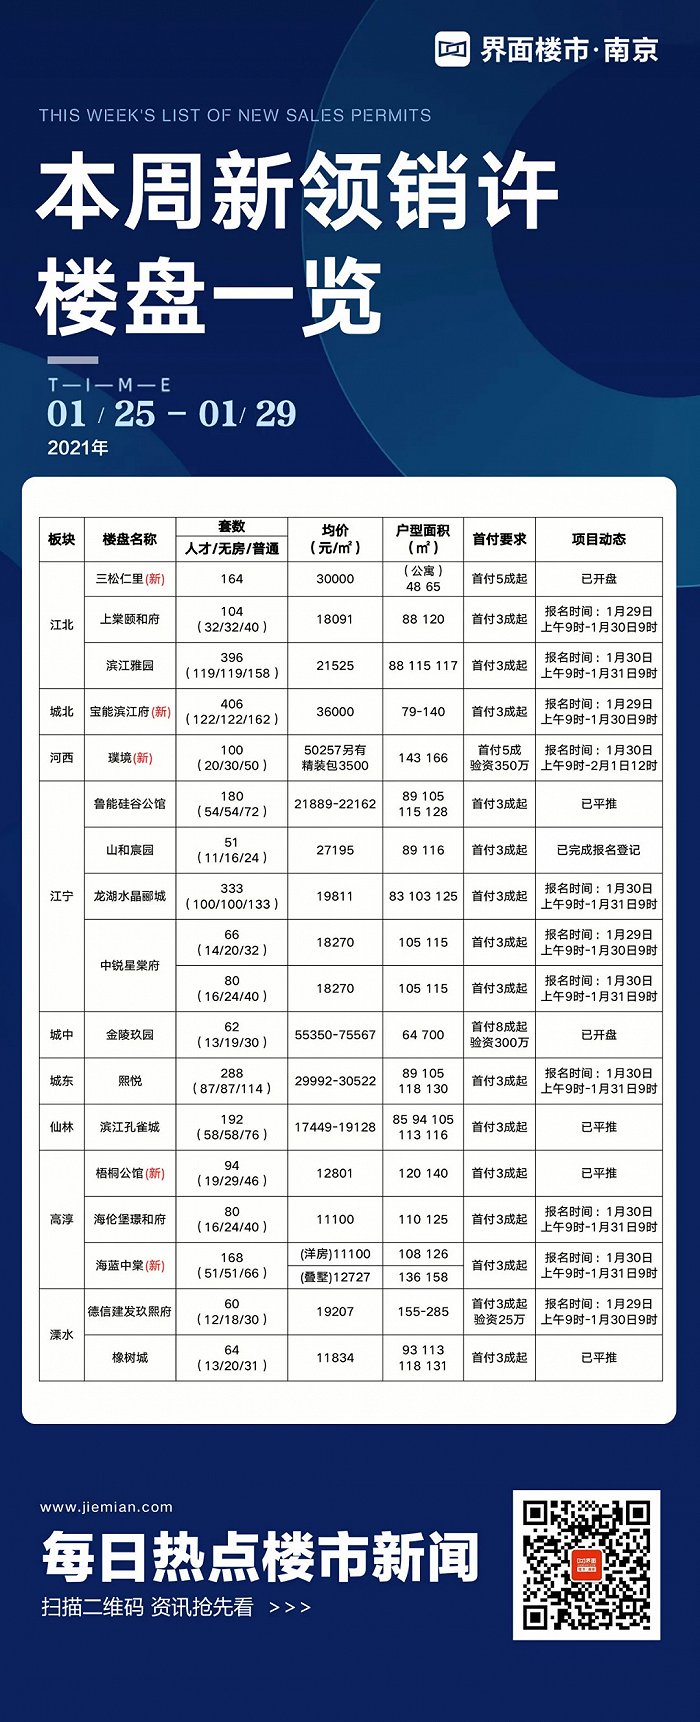 制图：界面楼市南京站 数据来源：南京网上房地产